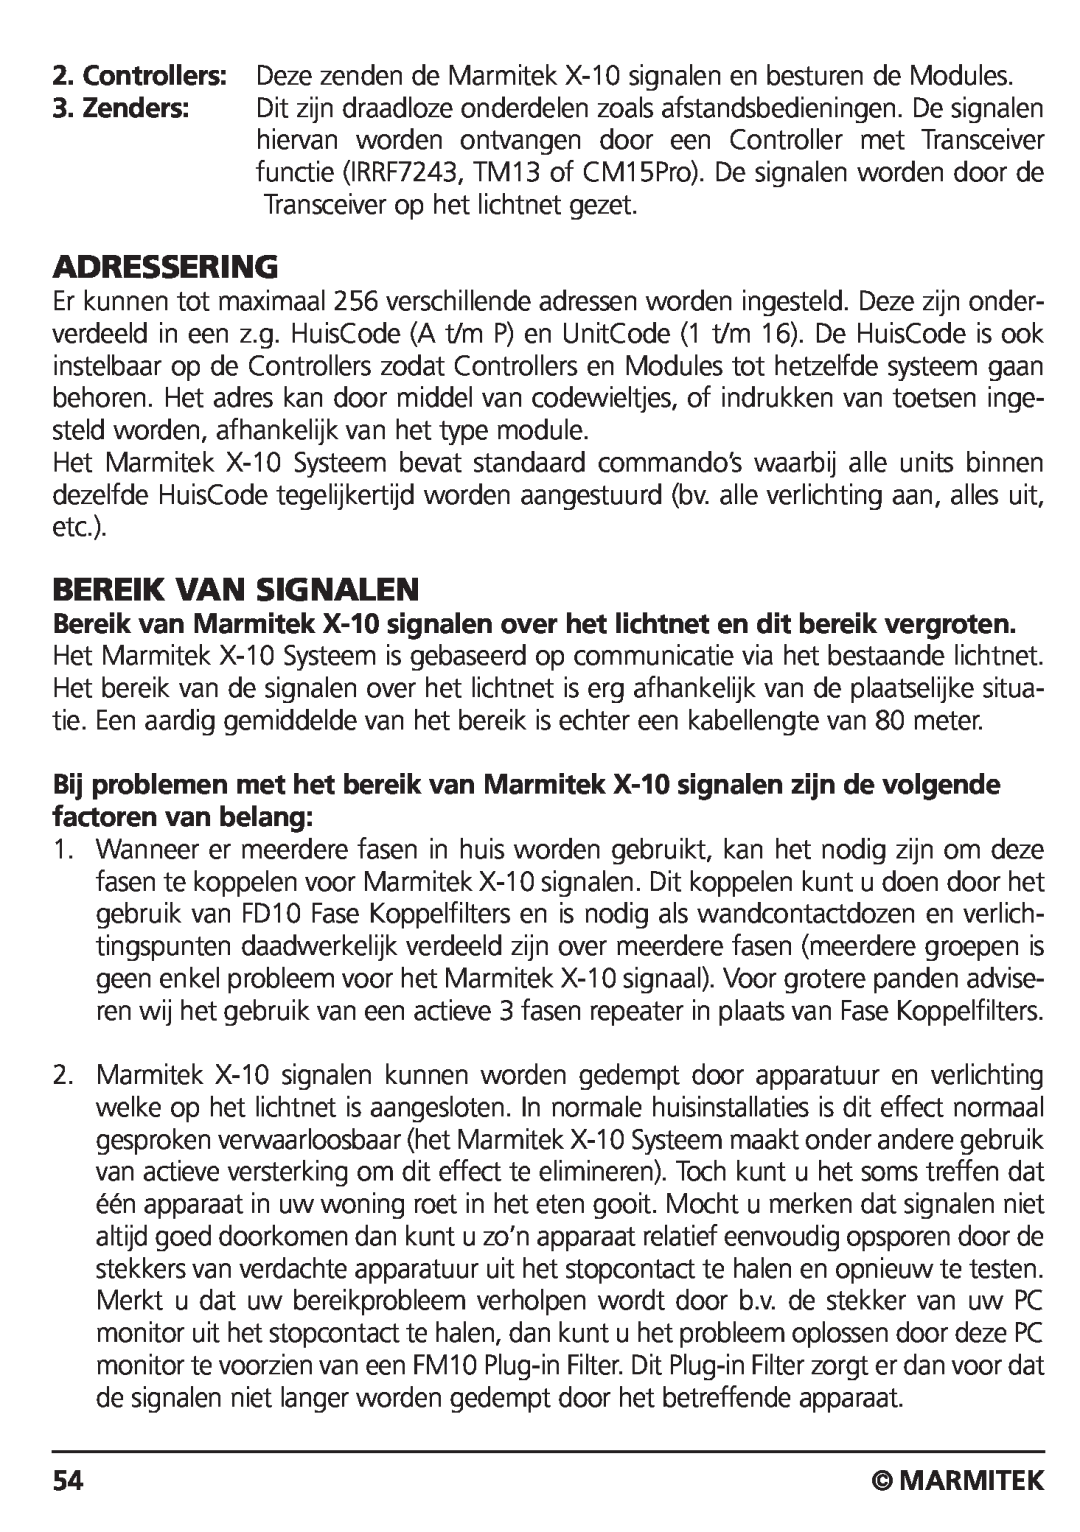 Marmitek CM15PRO manual Adressering, Bereik Van Signalen, Marmitek 